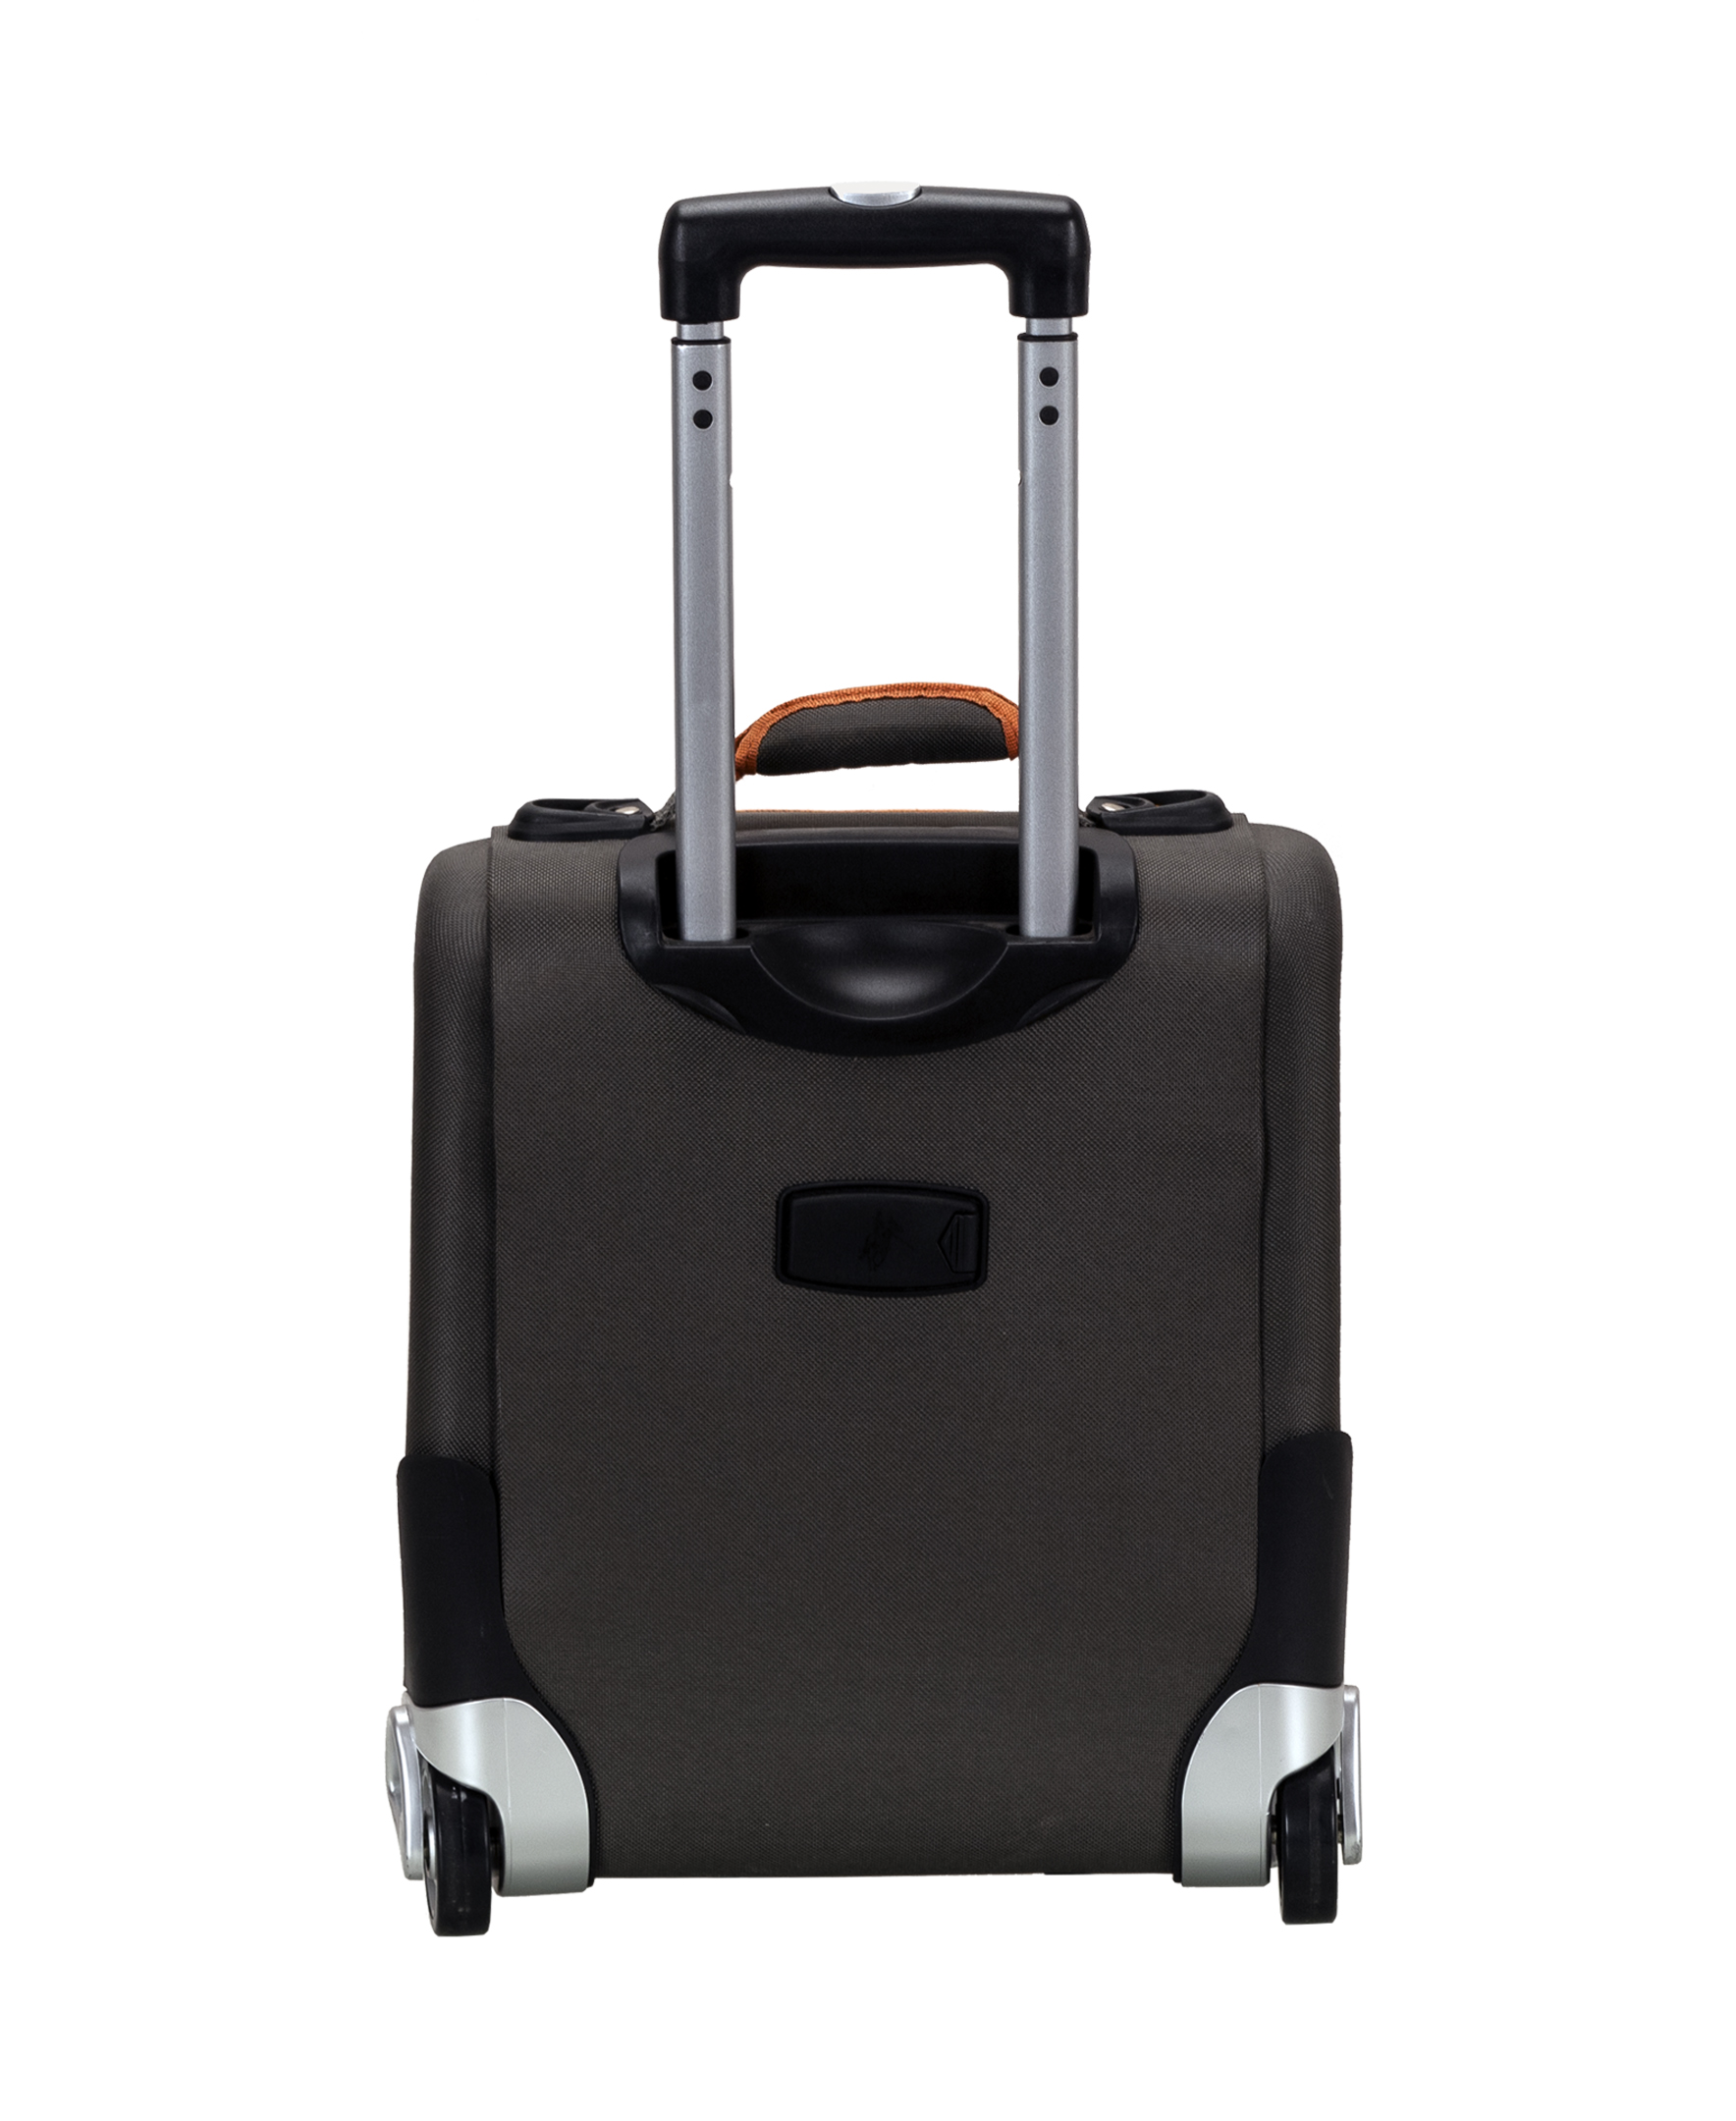 Rockland Luggage Varsity 4-Piece Softside Expandable Luggage Set F120 - image 3 of 6